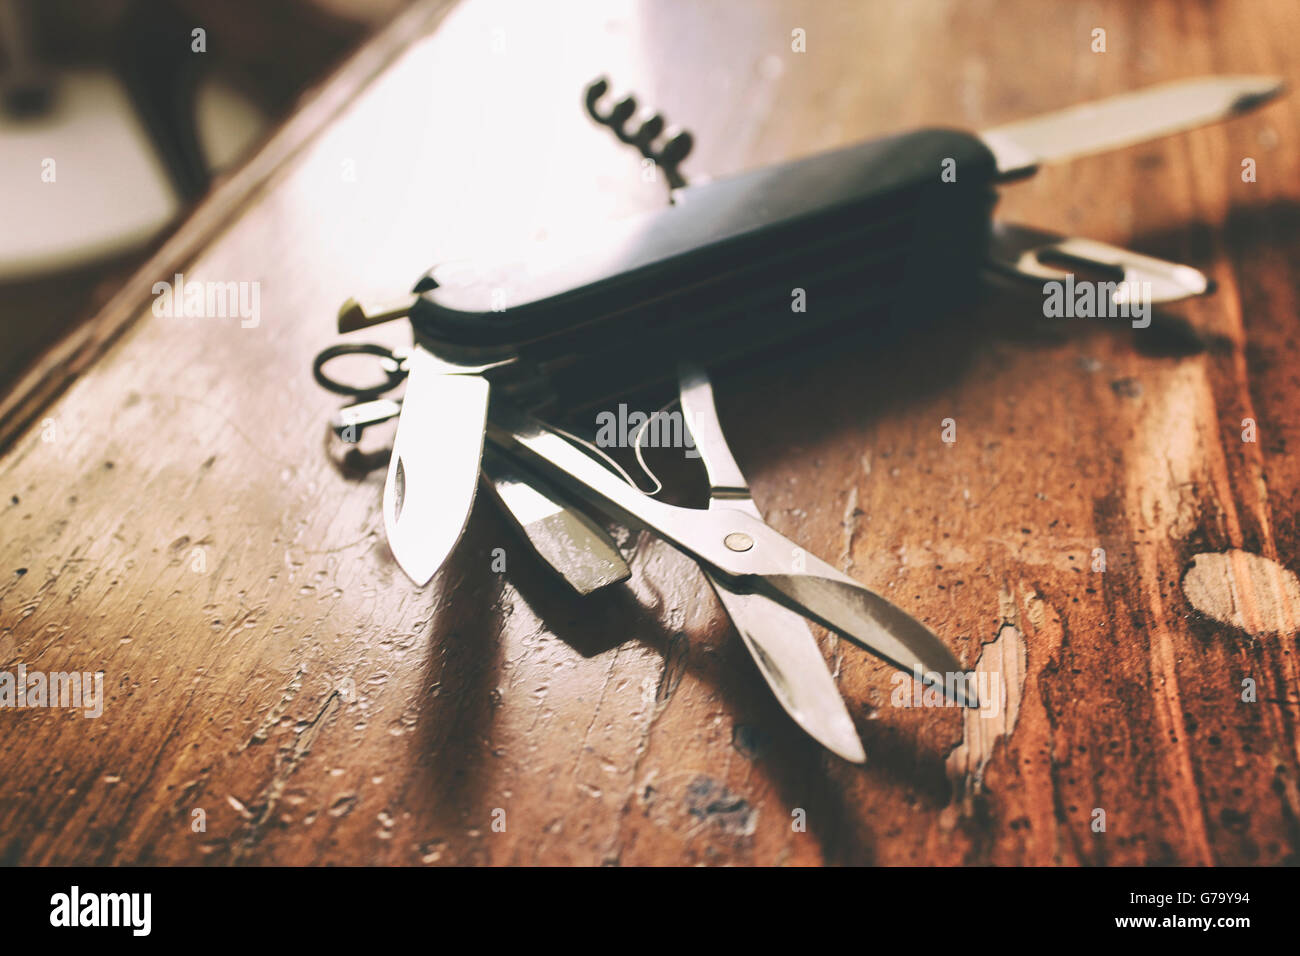 Fotografía de un cuchillo de estilo suizo. Foto de stock